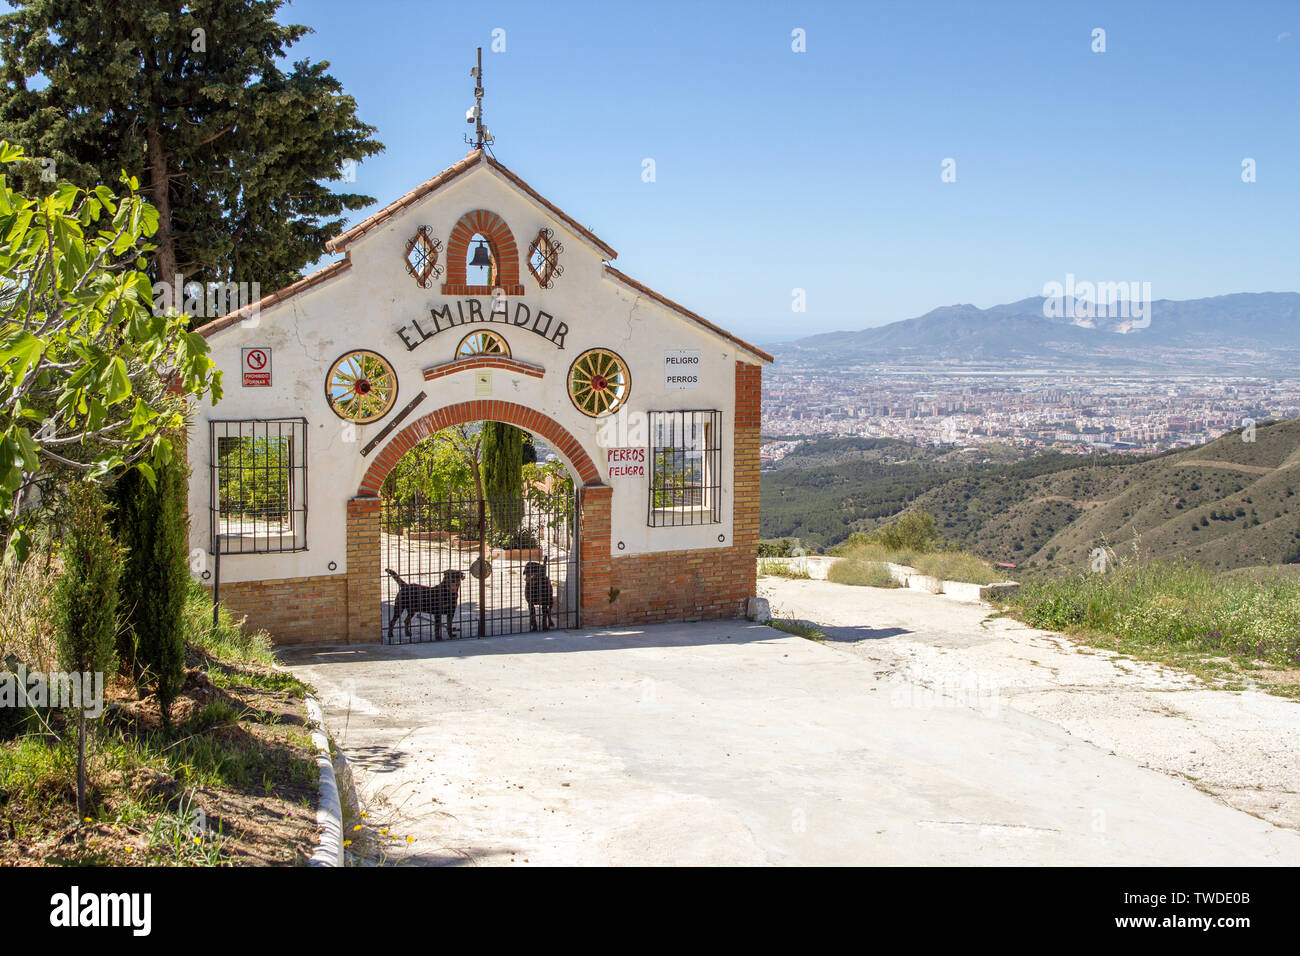 Le montagne intorno a Malaga Spagna Foto Stock